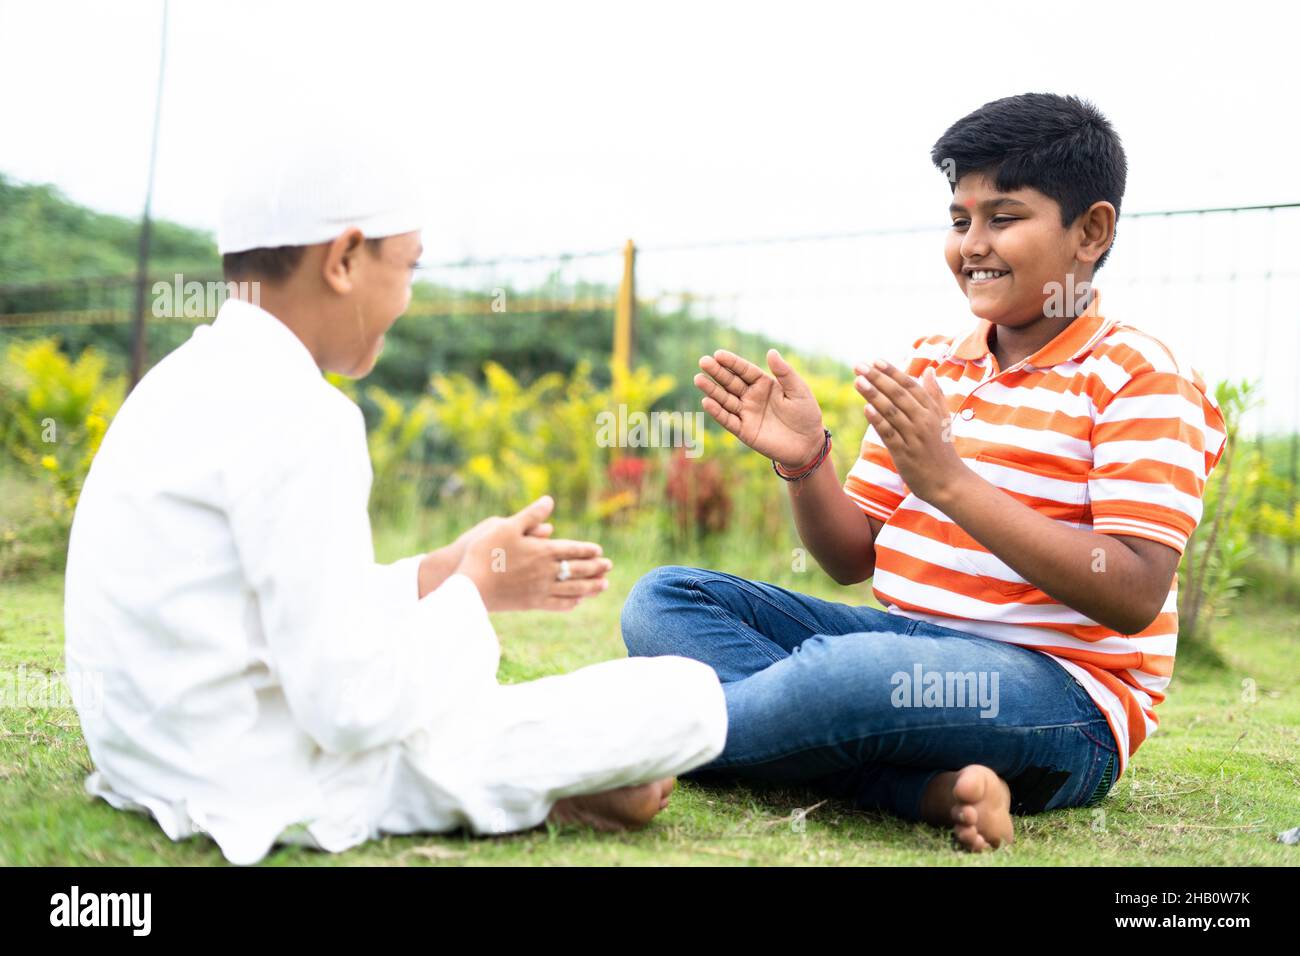 Glückliche indische multiethnische Kinder spielen schlagen und klatschen Hand Spiel im Park - Konzept der Kindheit Outdoor-Aktivitäten, Freundschaft und Stockfoto